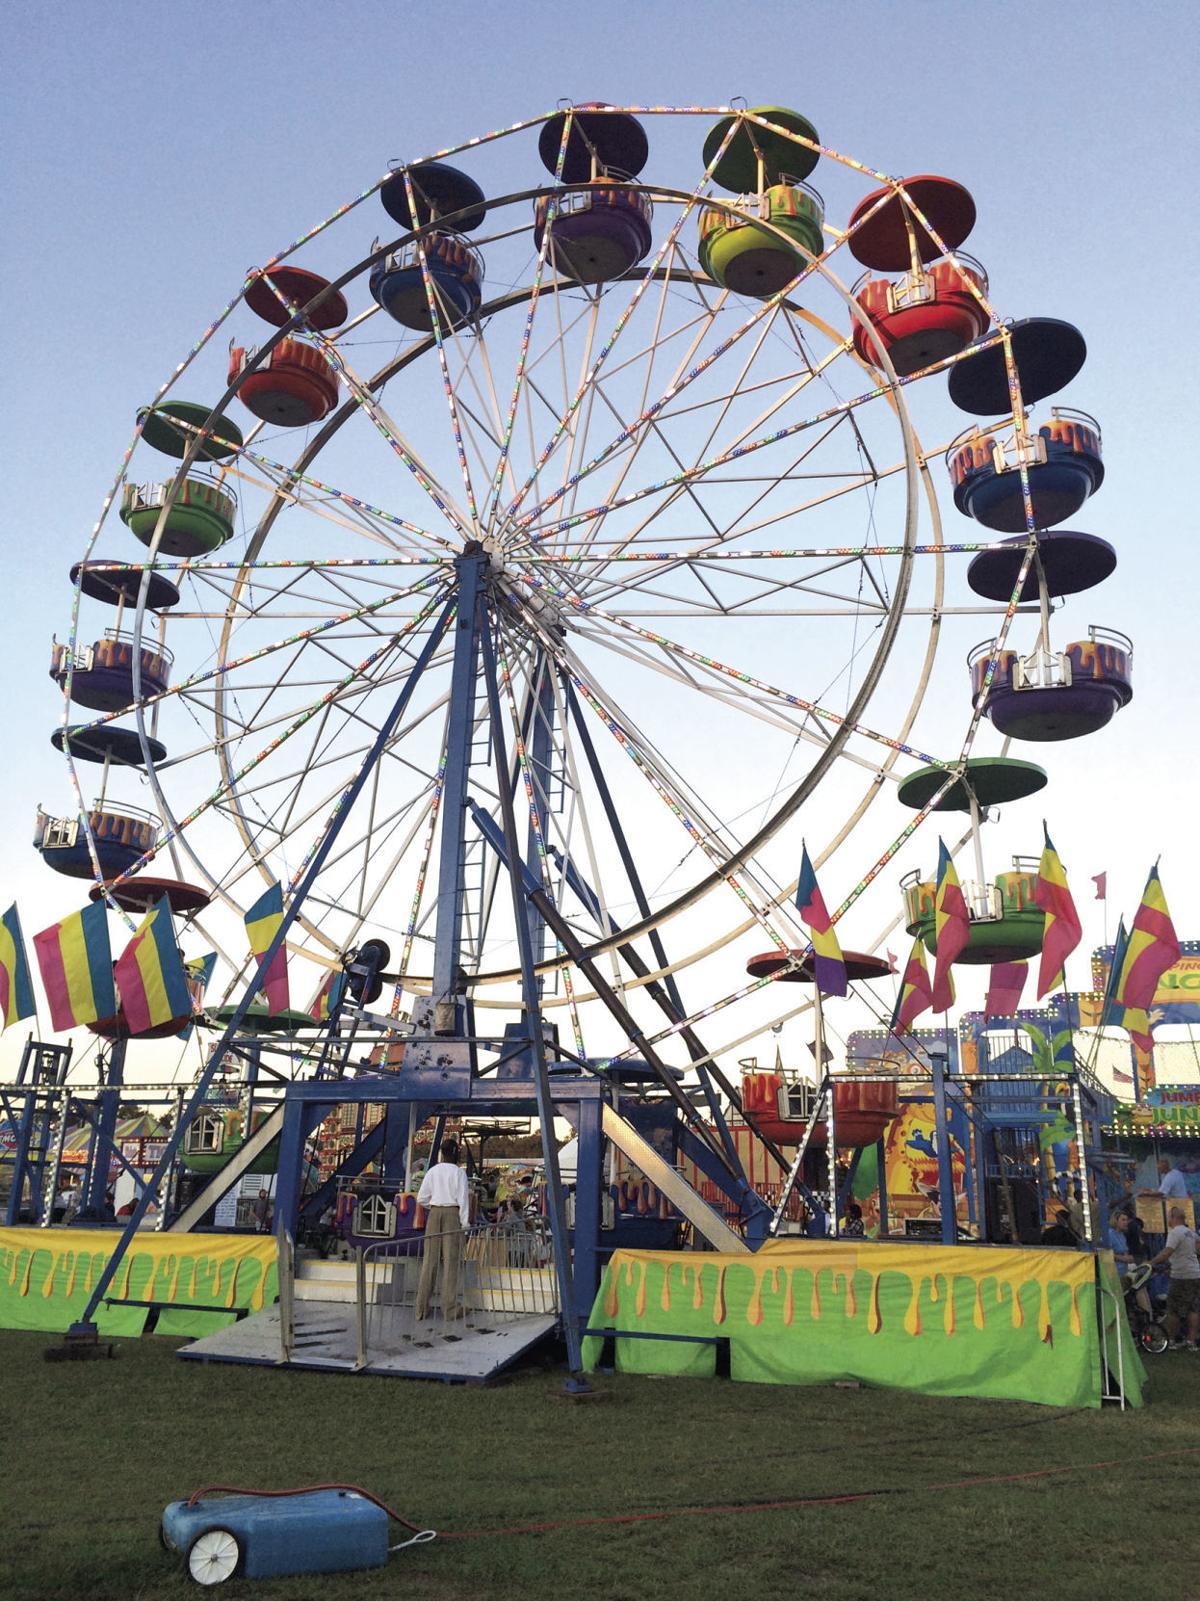 107th Annual Orangeburg County Fair kicks off Tuesday